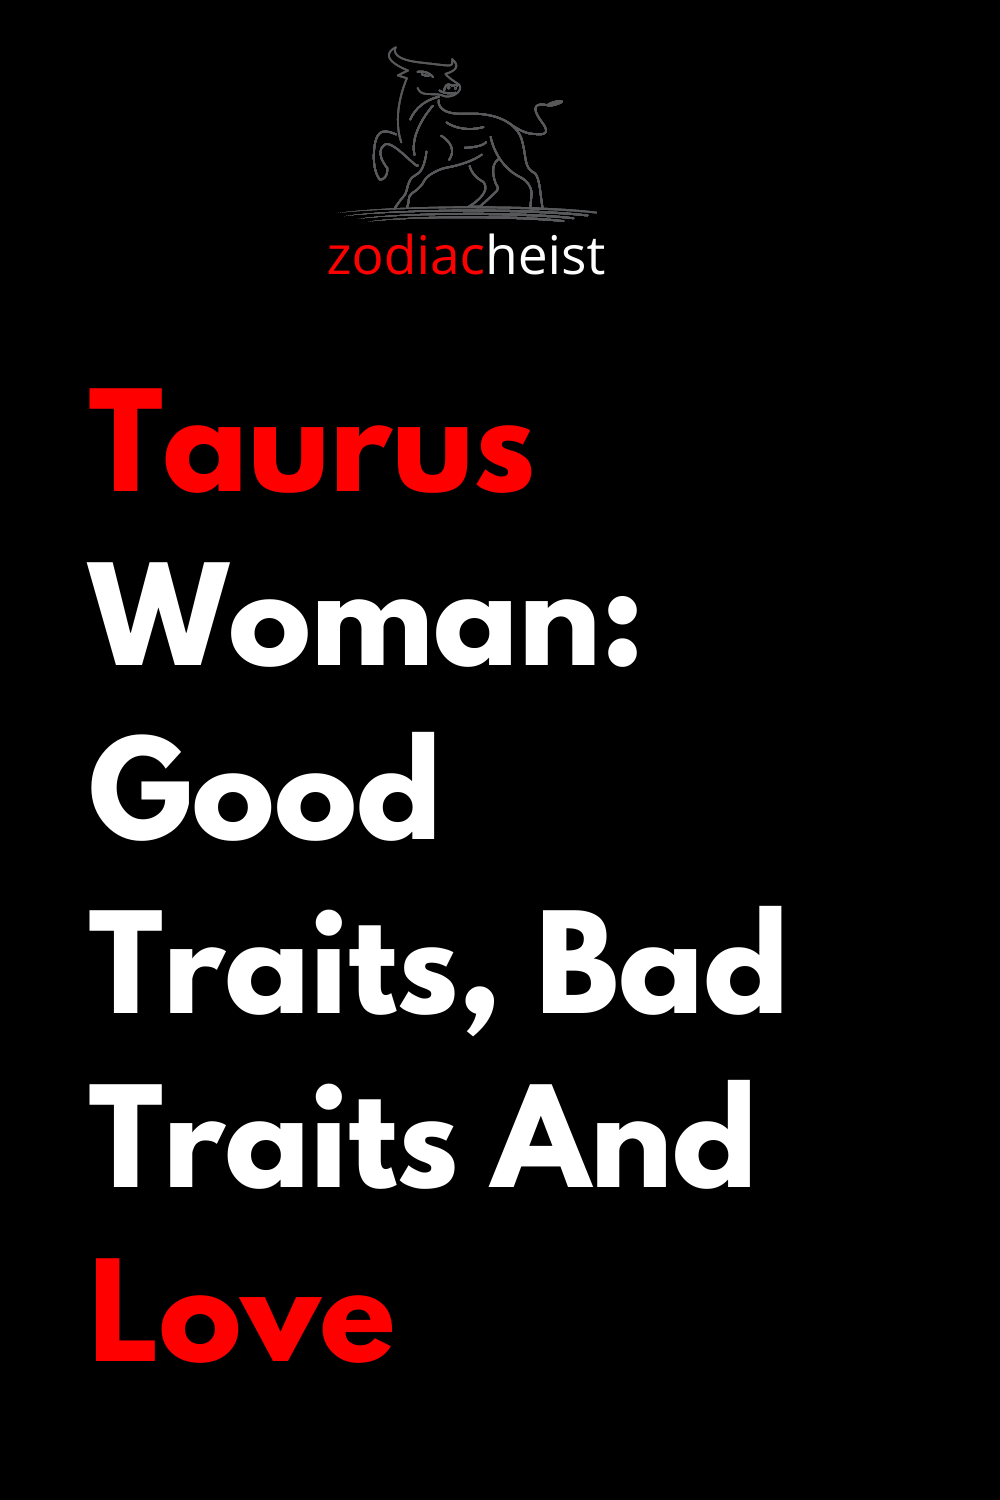 Taurus Woman: Good Traits, Bad Traits And Love